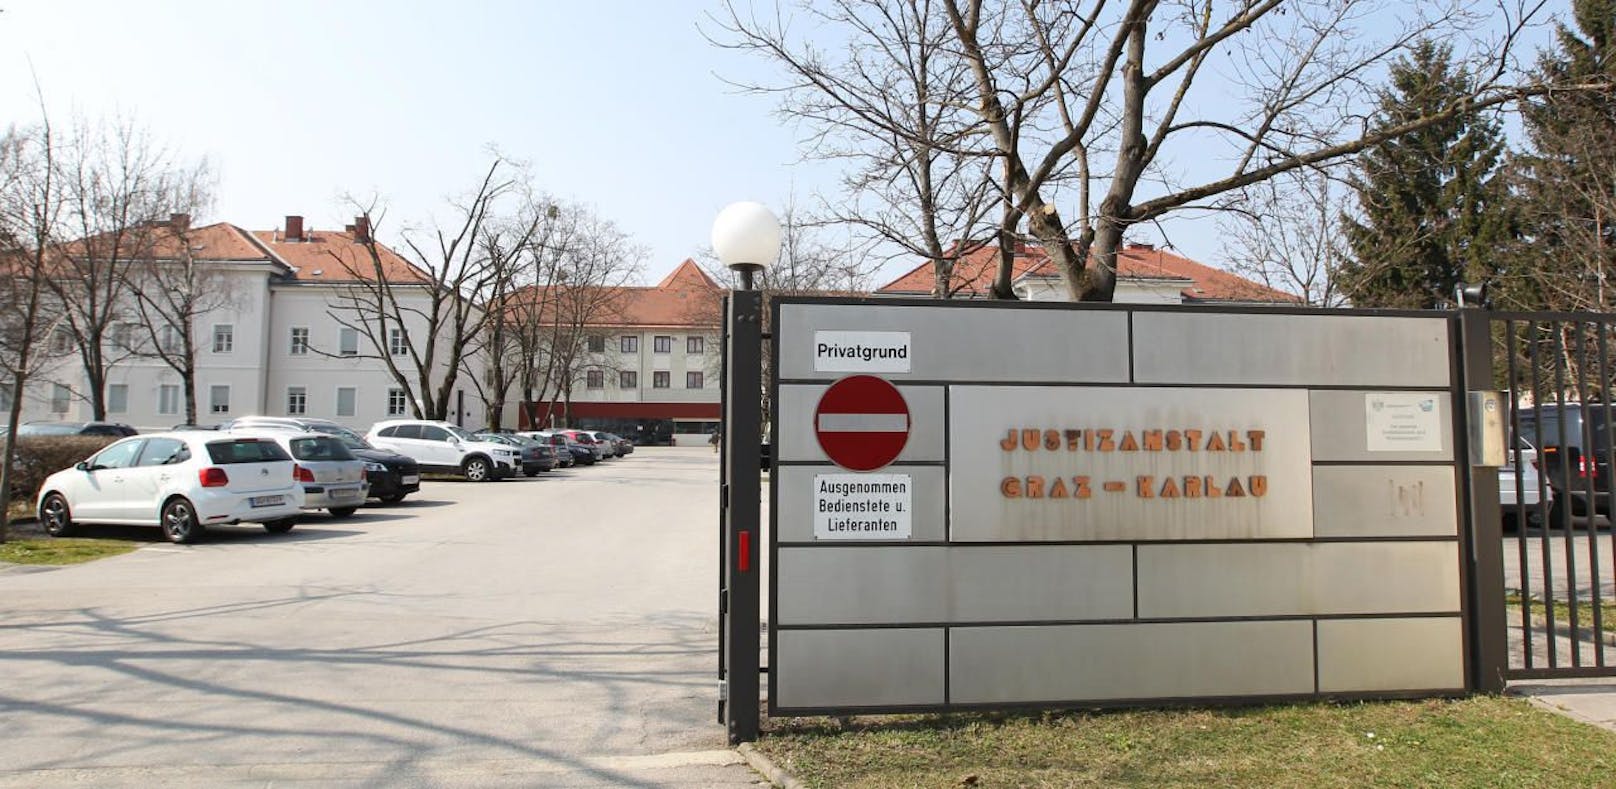 Der Vorfall passierte in der Justizanstalt Graz-Karlau